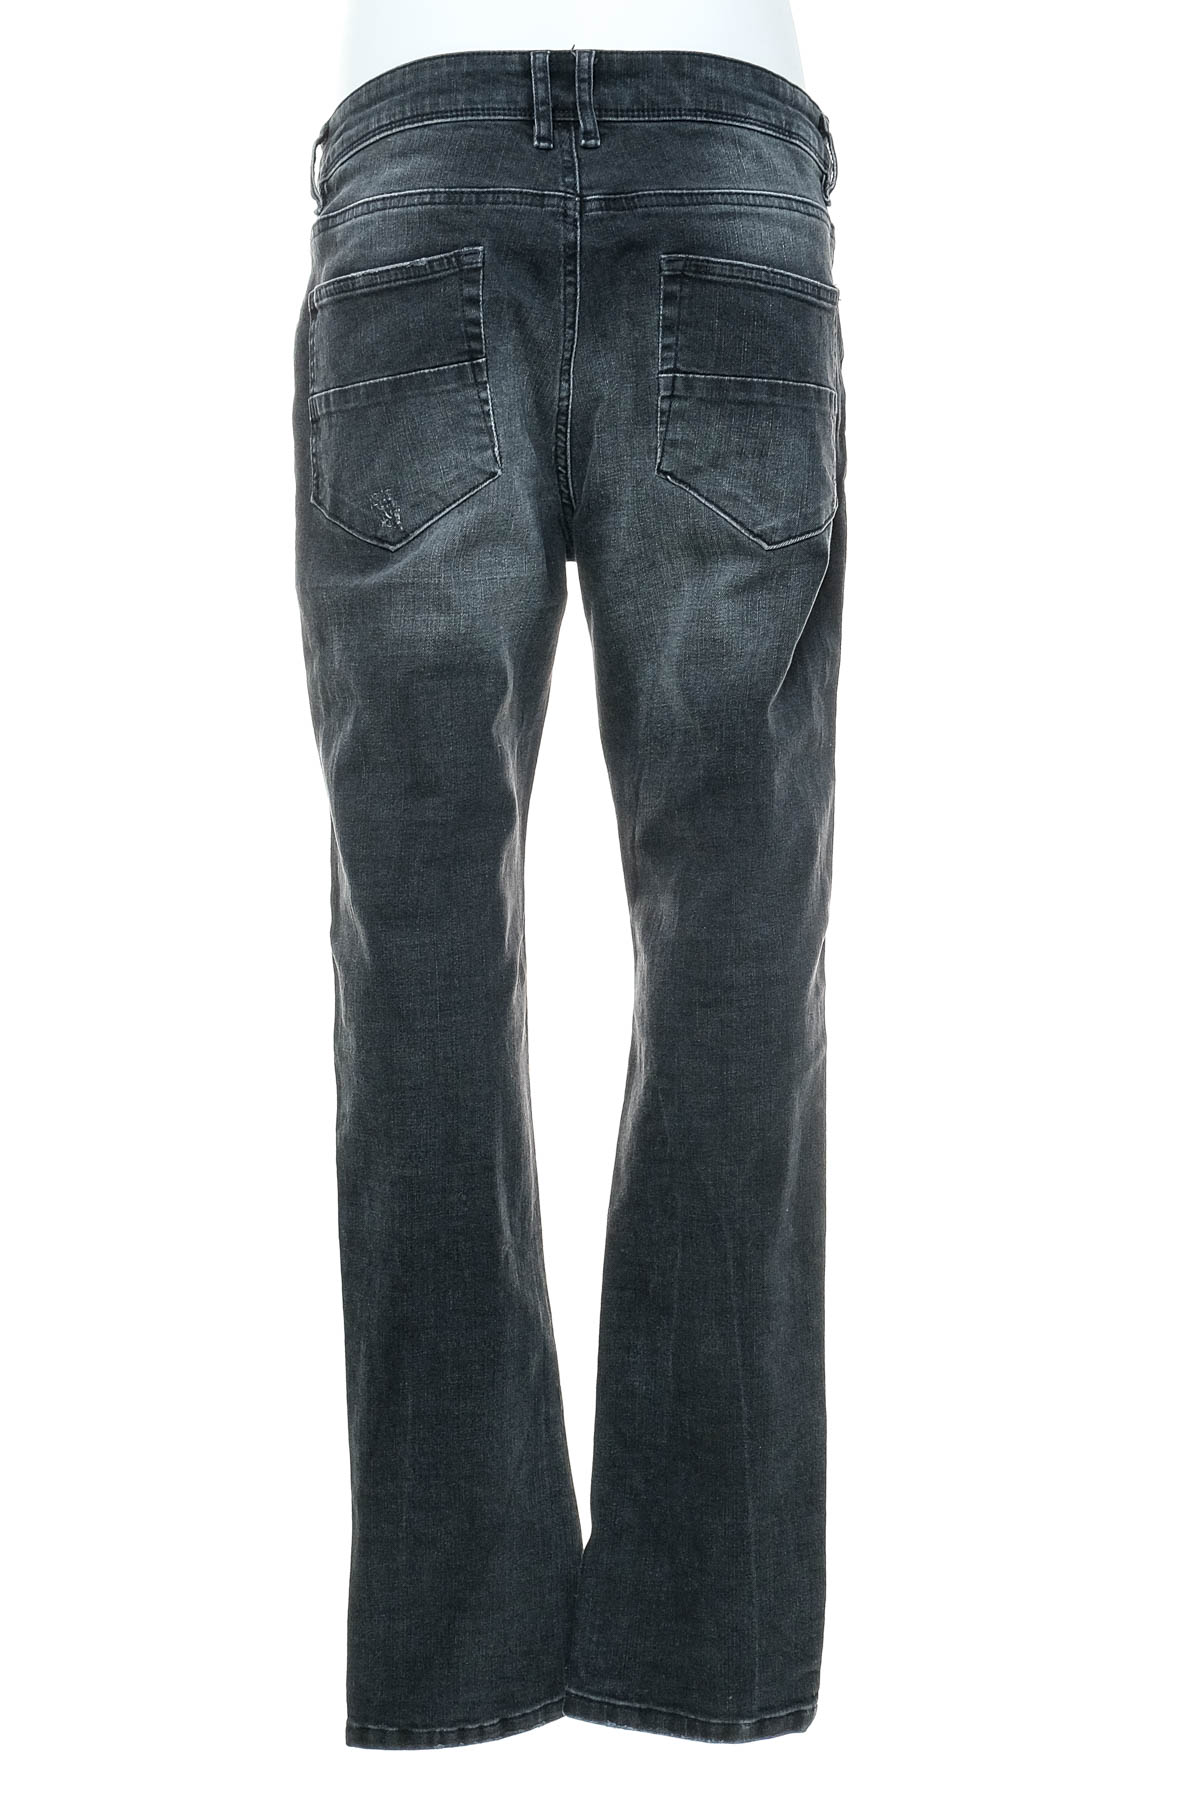 Jeans pentru bărbăți - Urban Style - 1